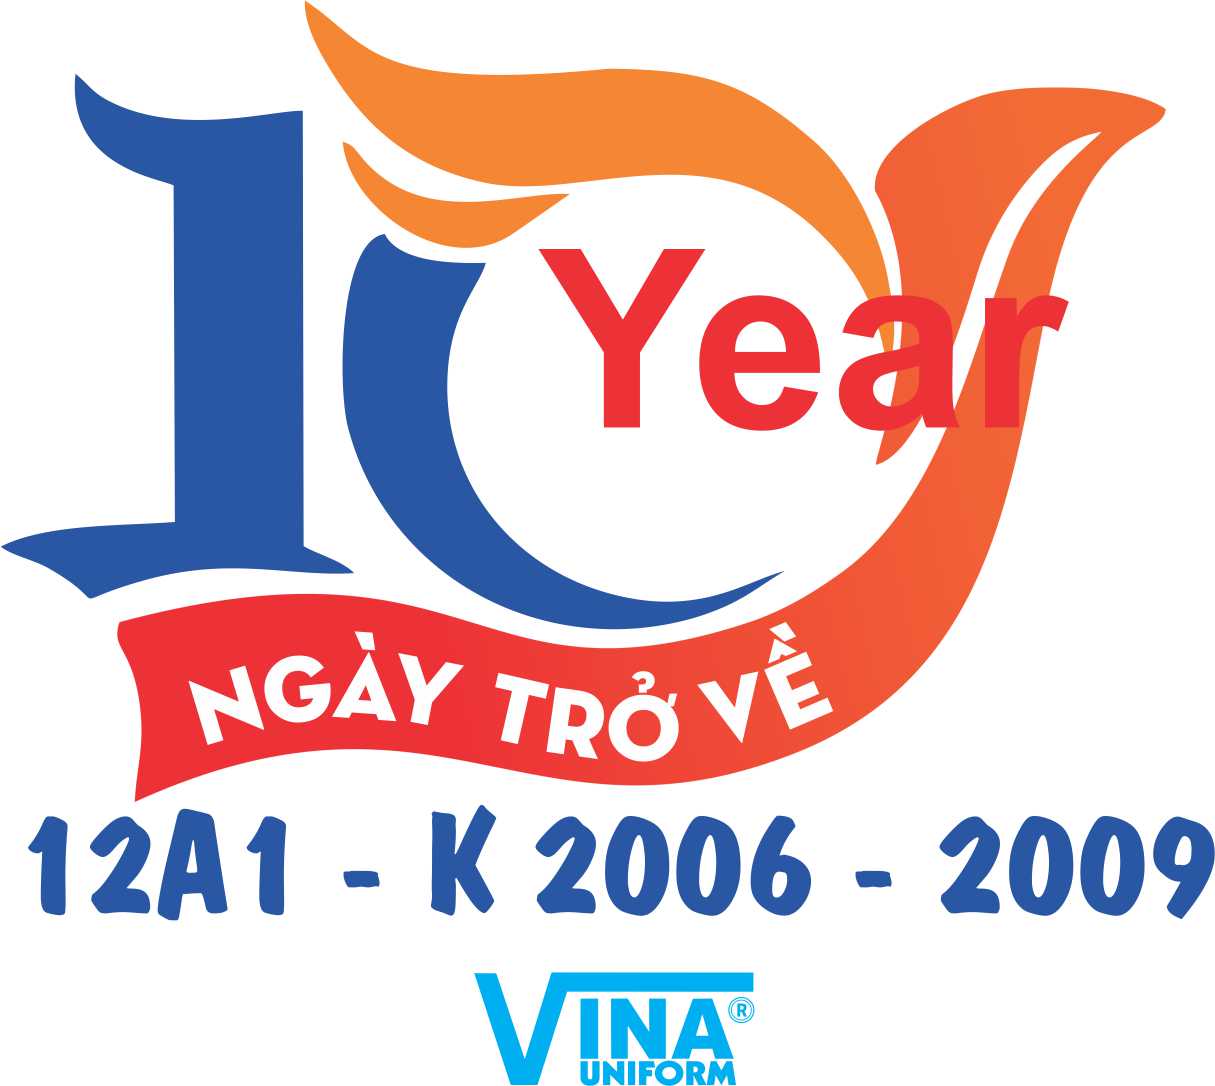 Chinh phục thử thách logo 10 năm ra trường với đam mê và nỗ lực